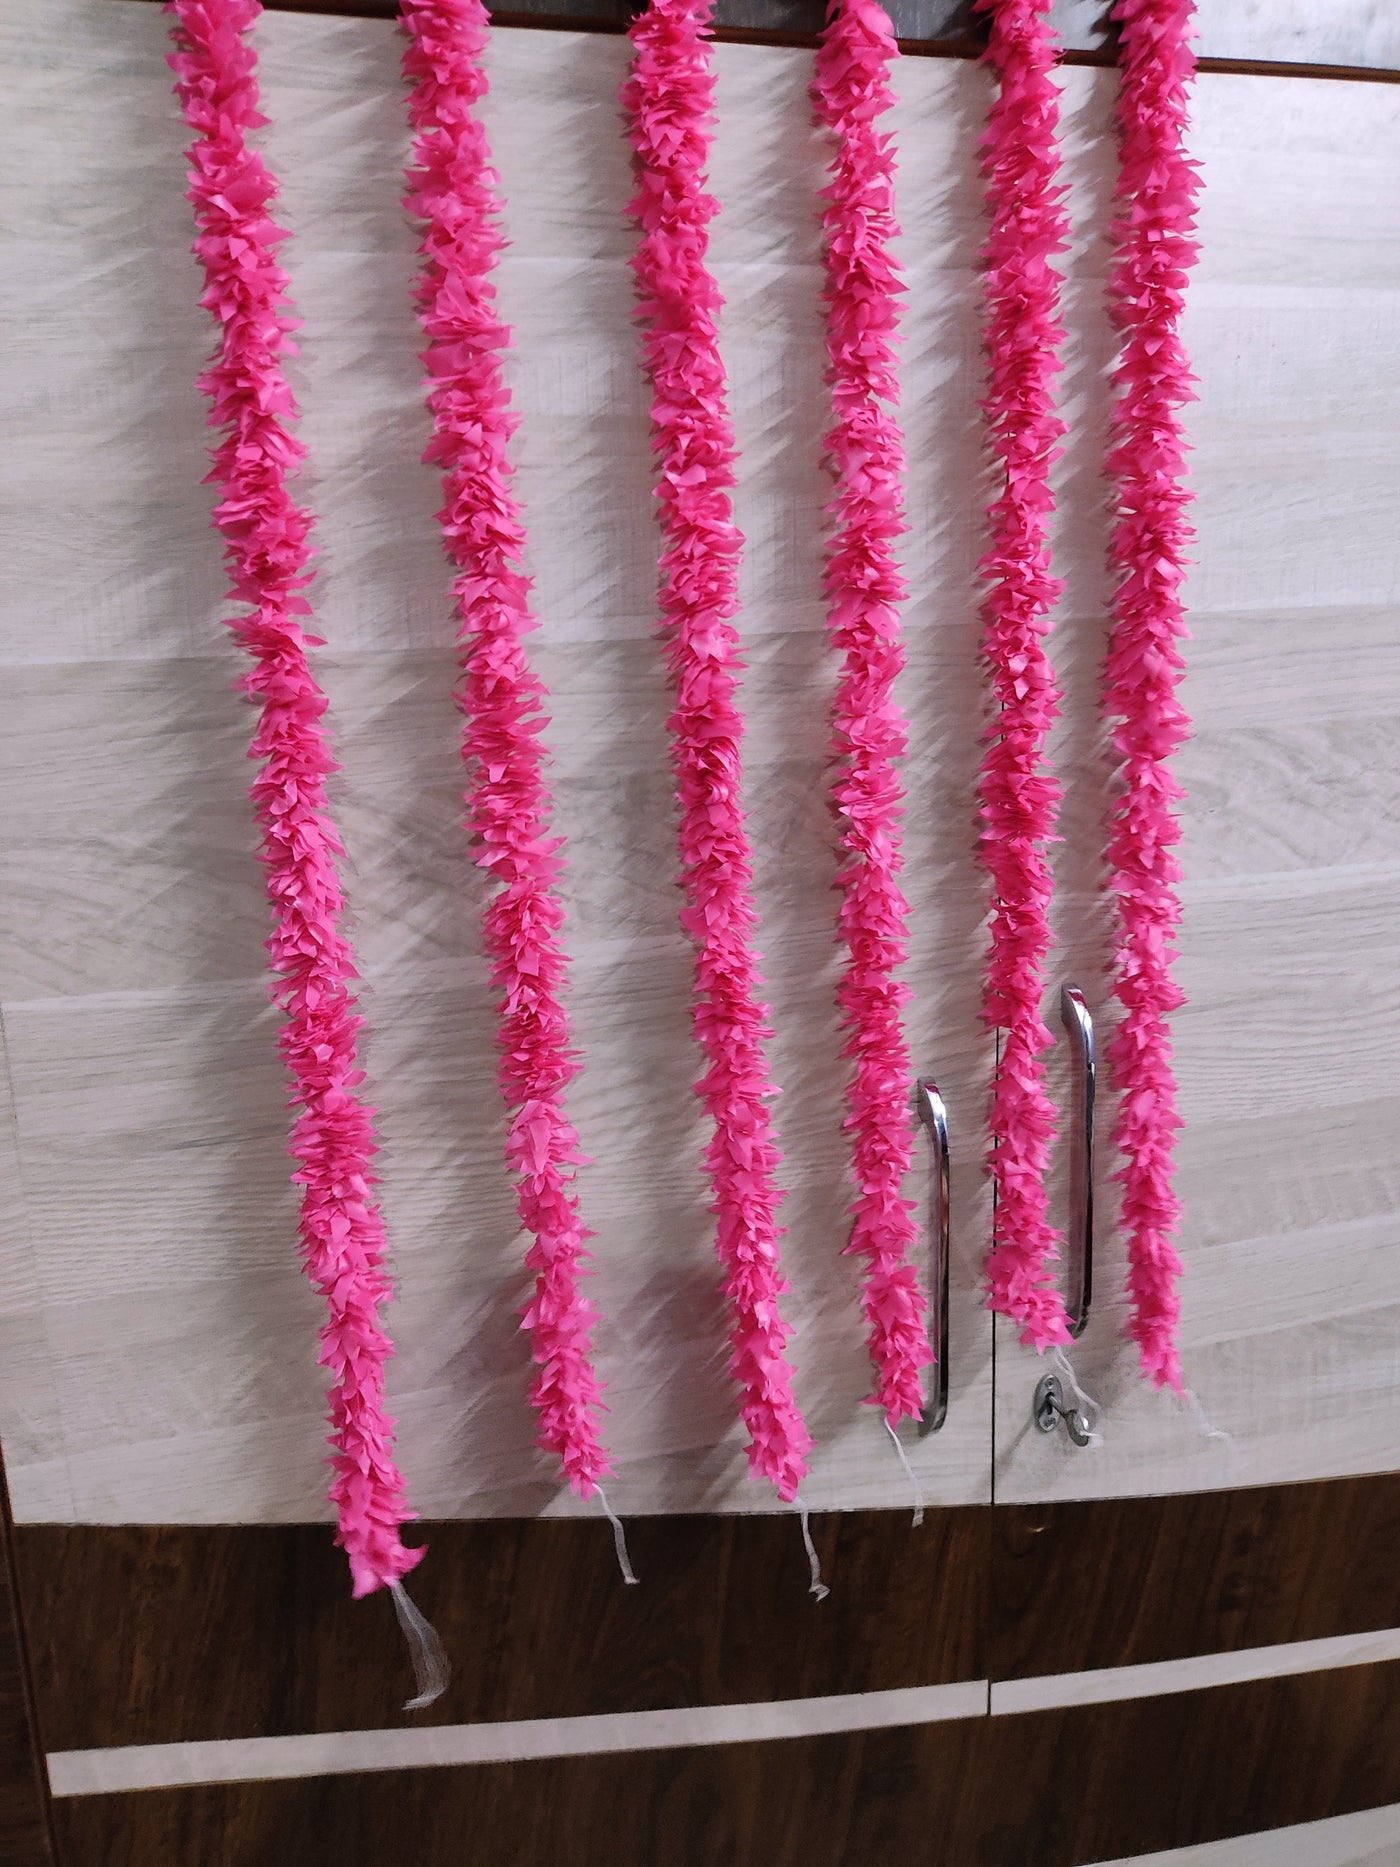 LAMANSH jasmine hangings LAMANSH® (3.5 feet) Pack of 12 Artificial Pink Jasmine Flower Hangings for Diwali ✨ Ganpati Decoration / Decorative Hangings for festival / Wall Hangings for Home & Pooja Mandir